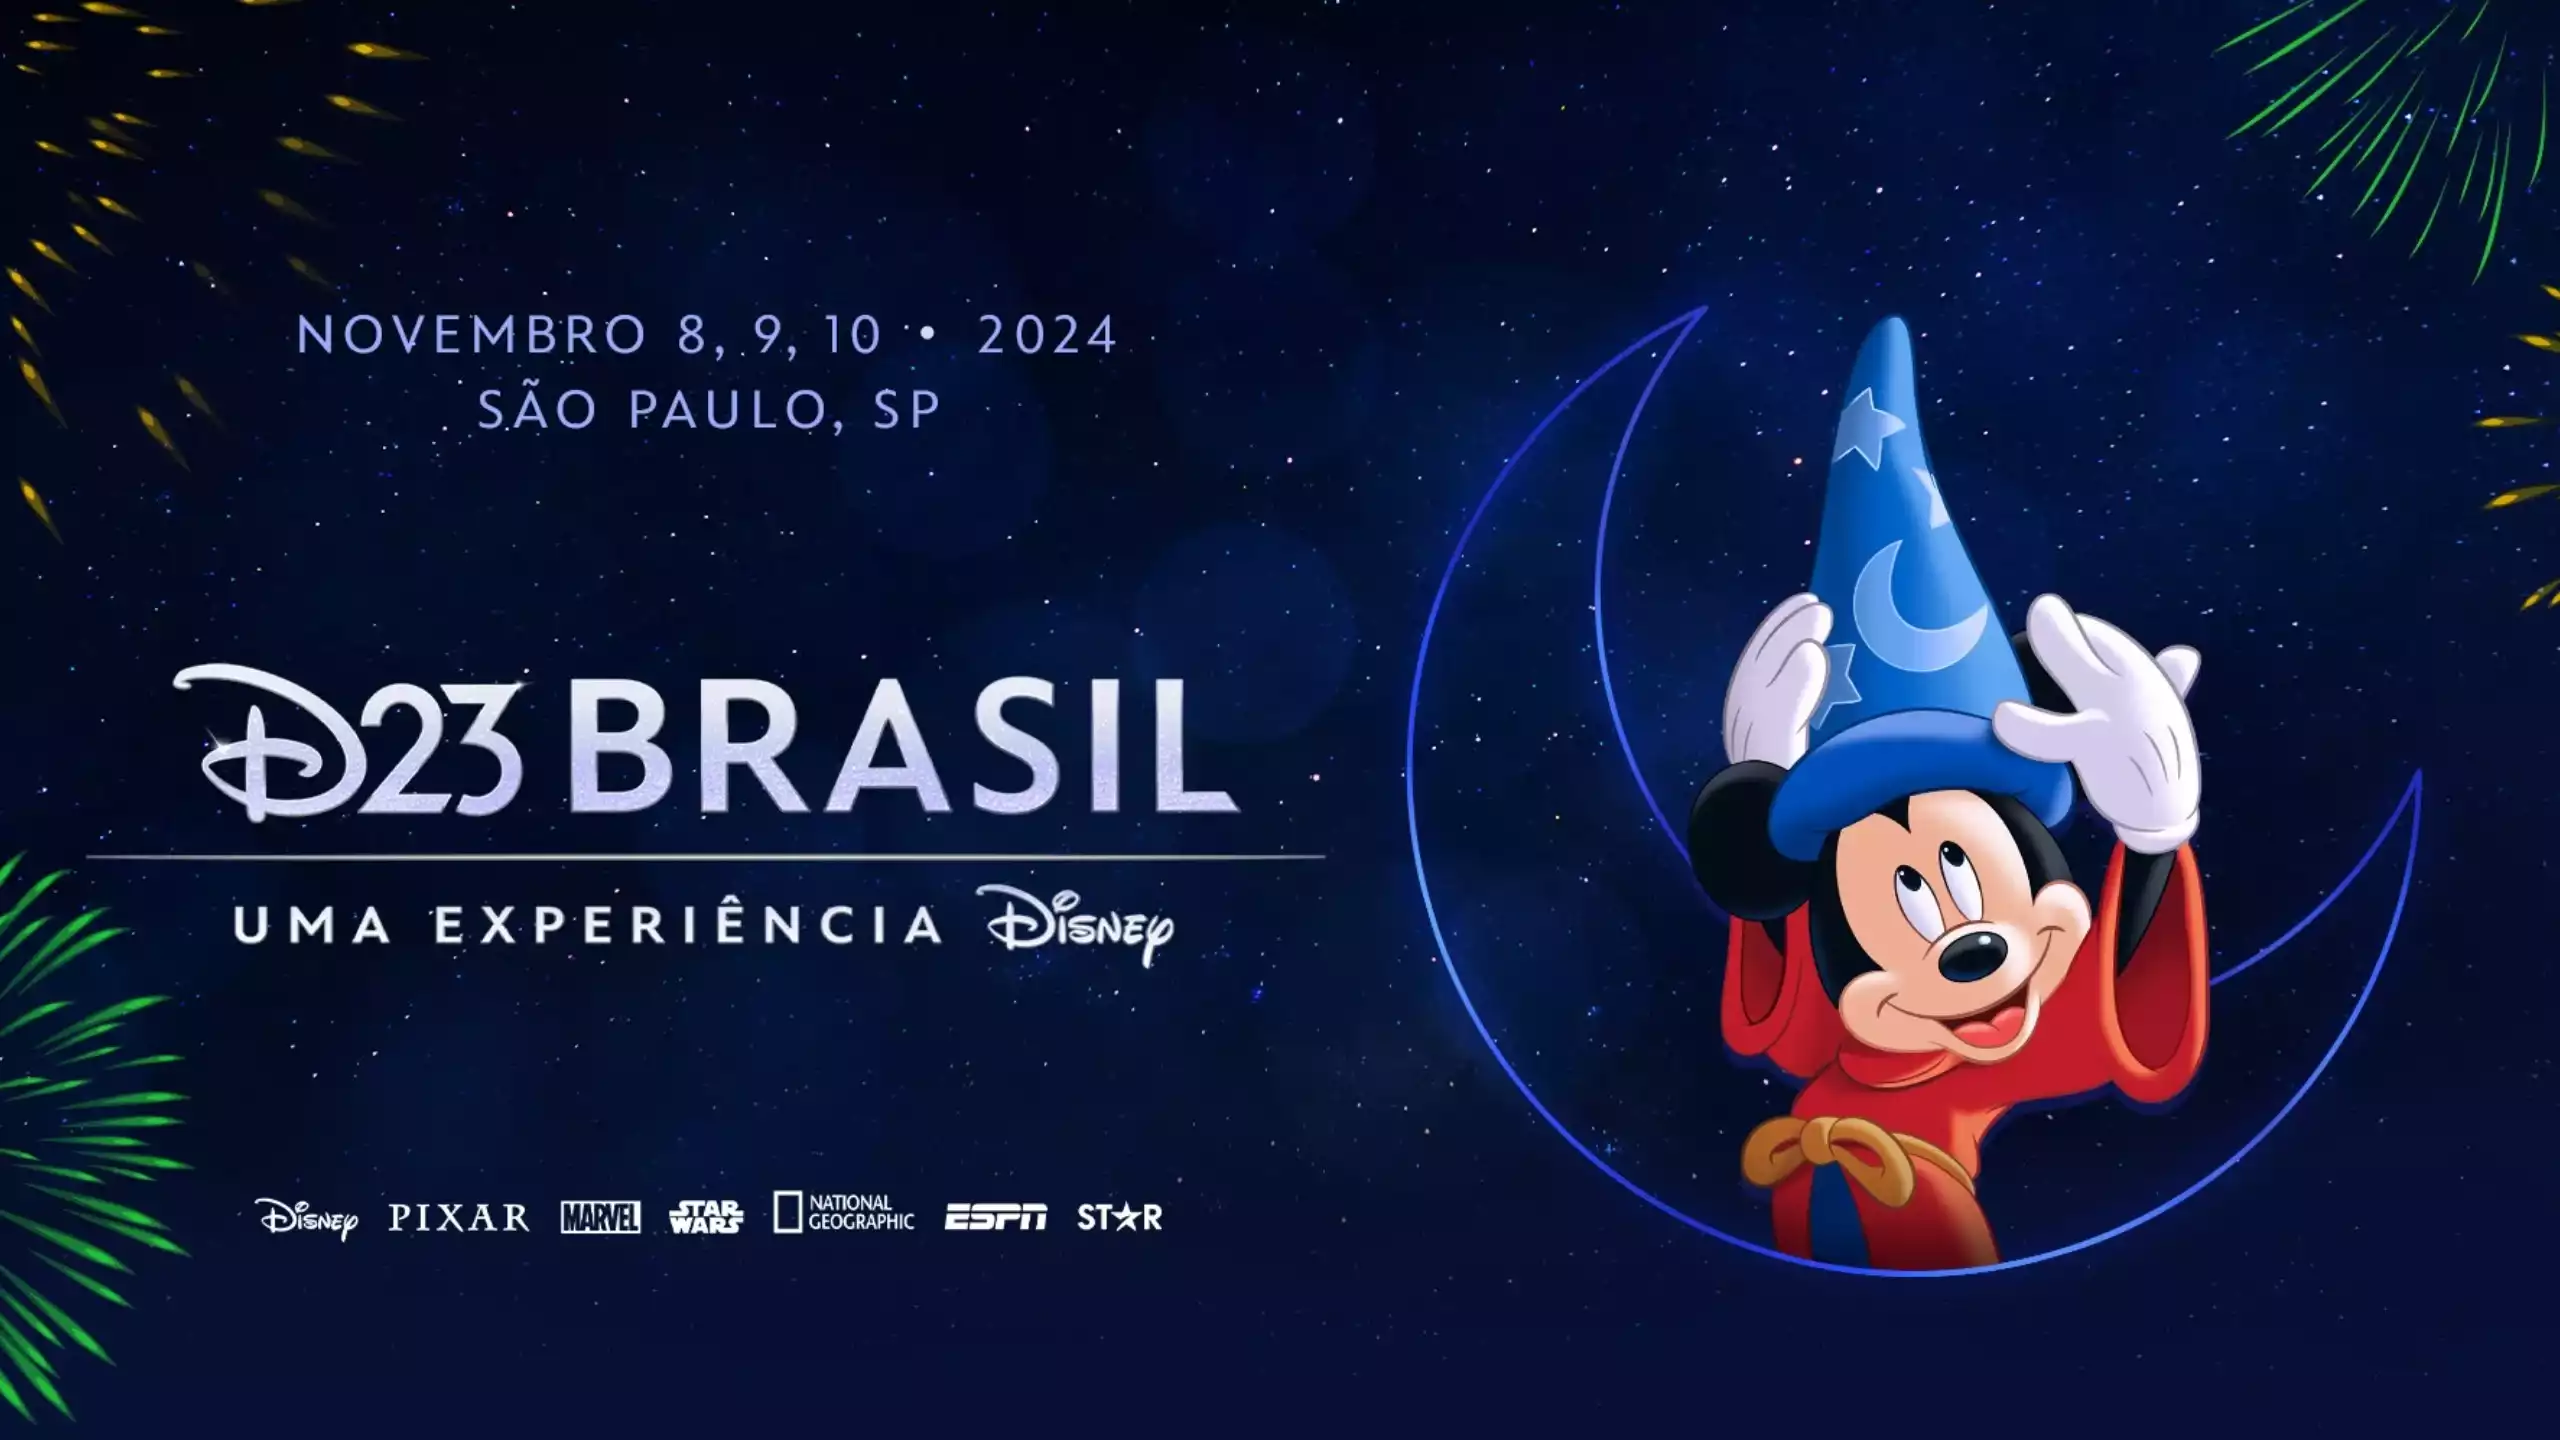 D23 Brasil, evento da Disney, tem local e data anunciados